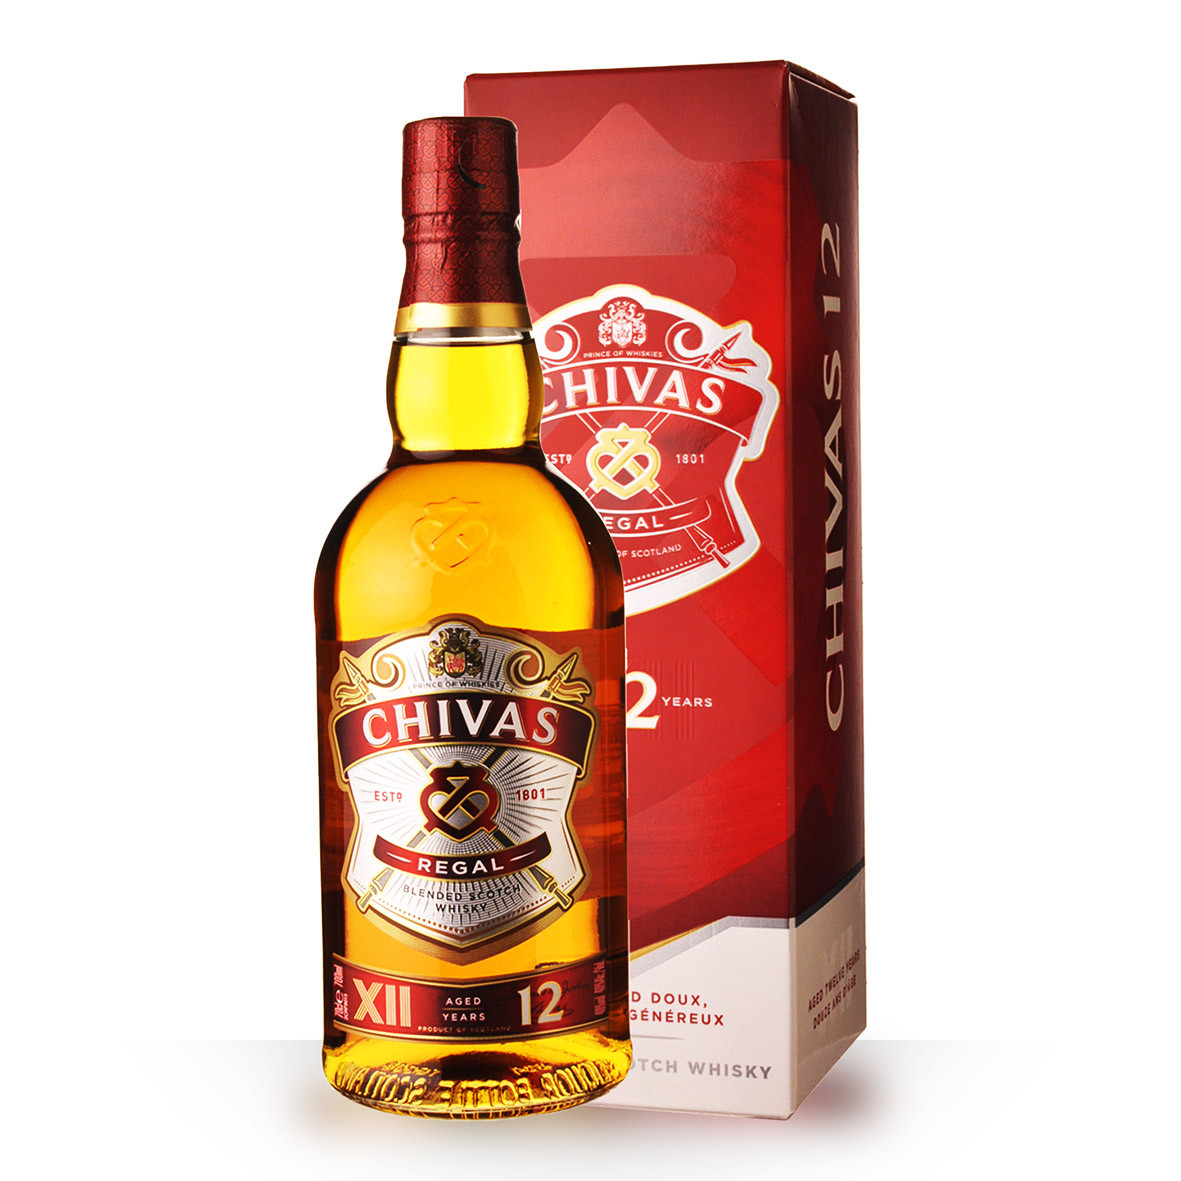 Acheter du Whisky Chivas Regal 12 ans 70cl vendu en Etui sur notre site -  Odyssee-vins